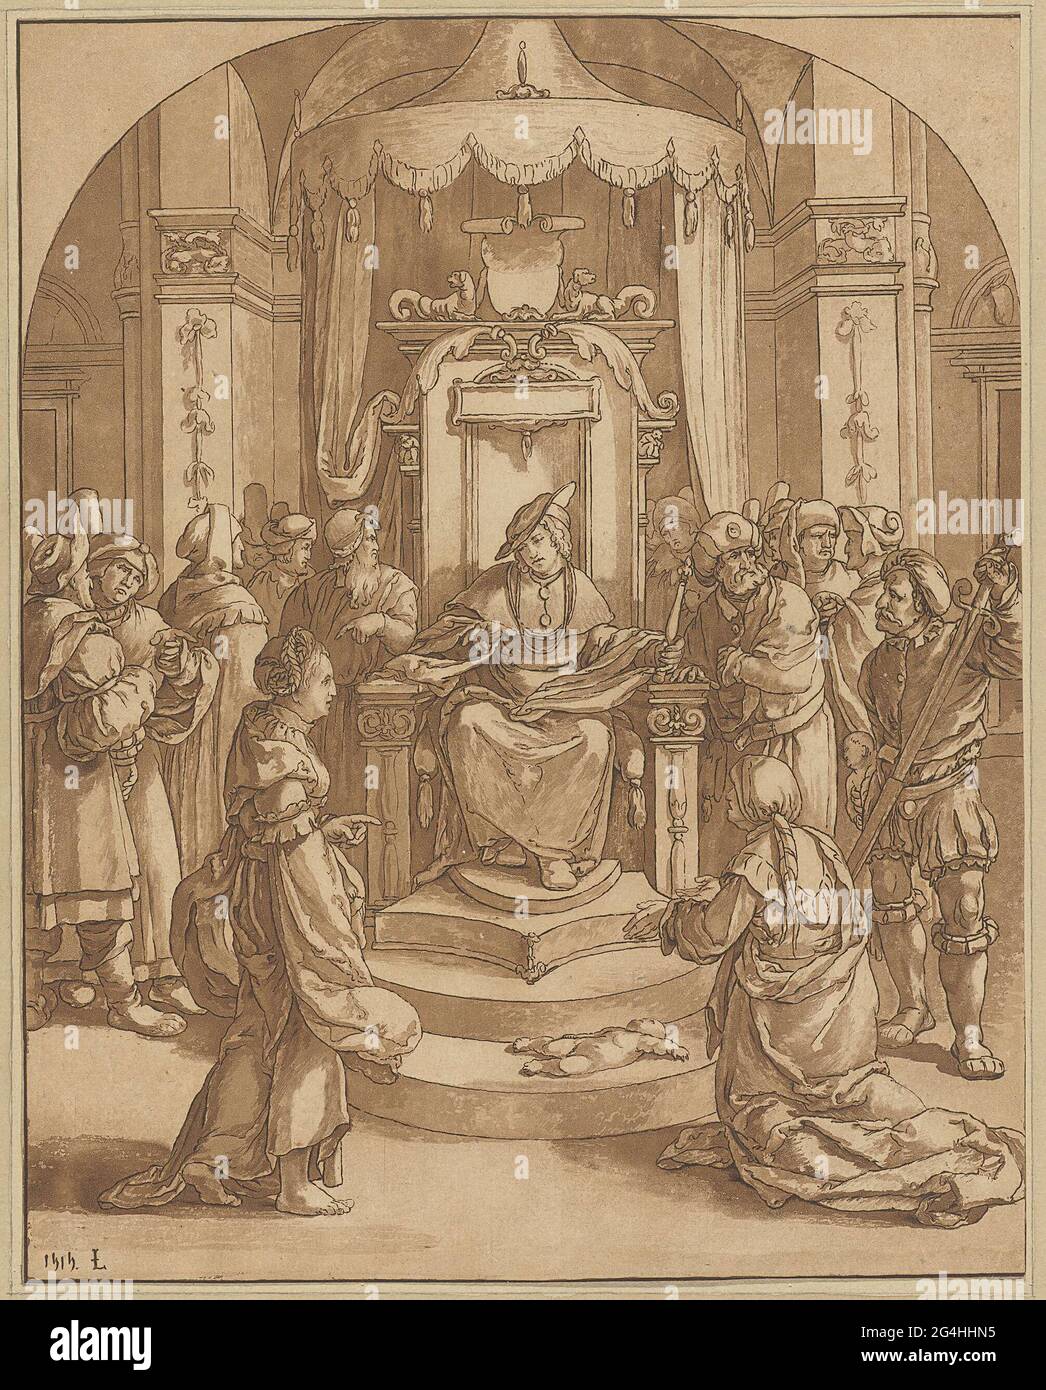 El rey Salomón se sienta en su trono y veló su juicio. Él da la orden de  dejar que el bebé comparta a la mitad para determinar quién es la madre